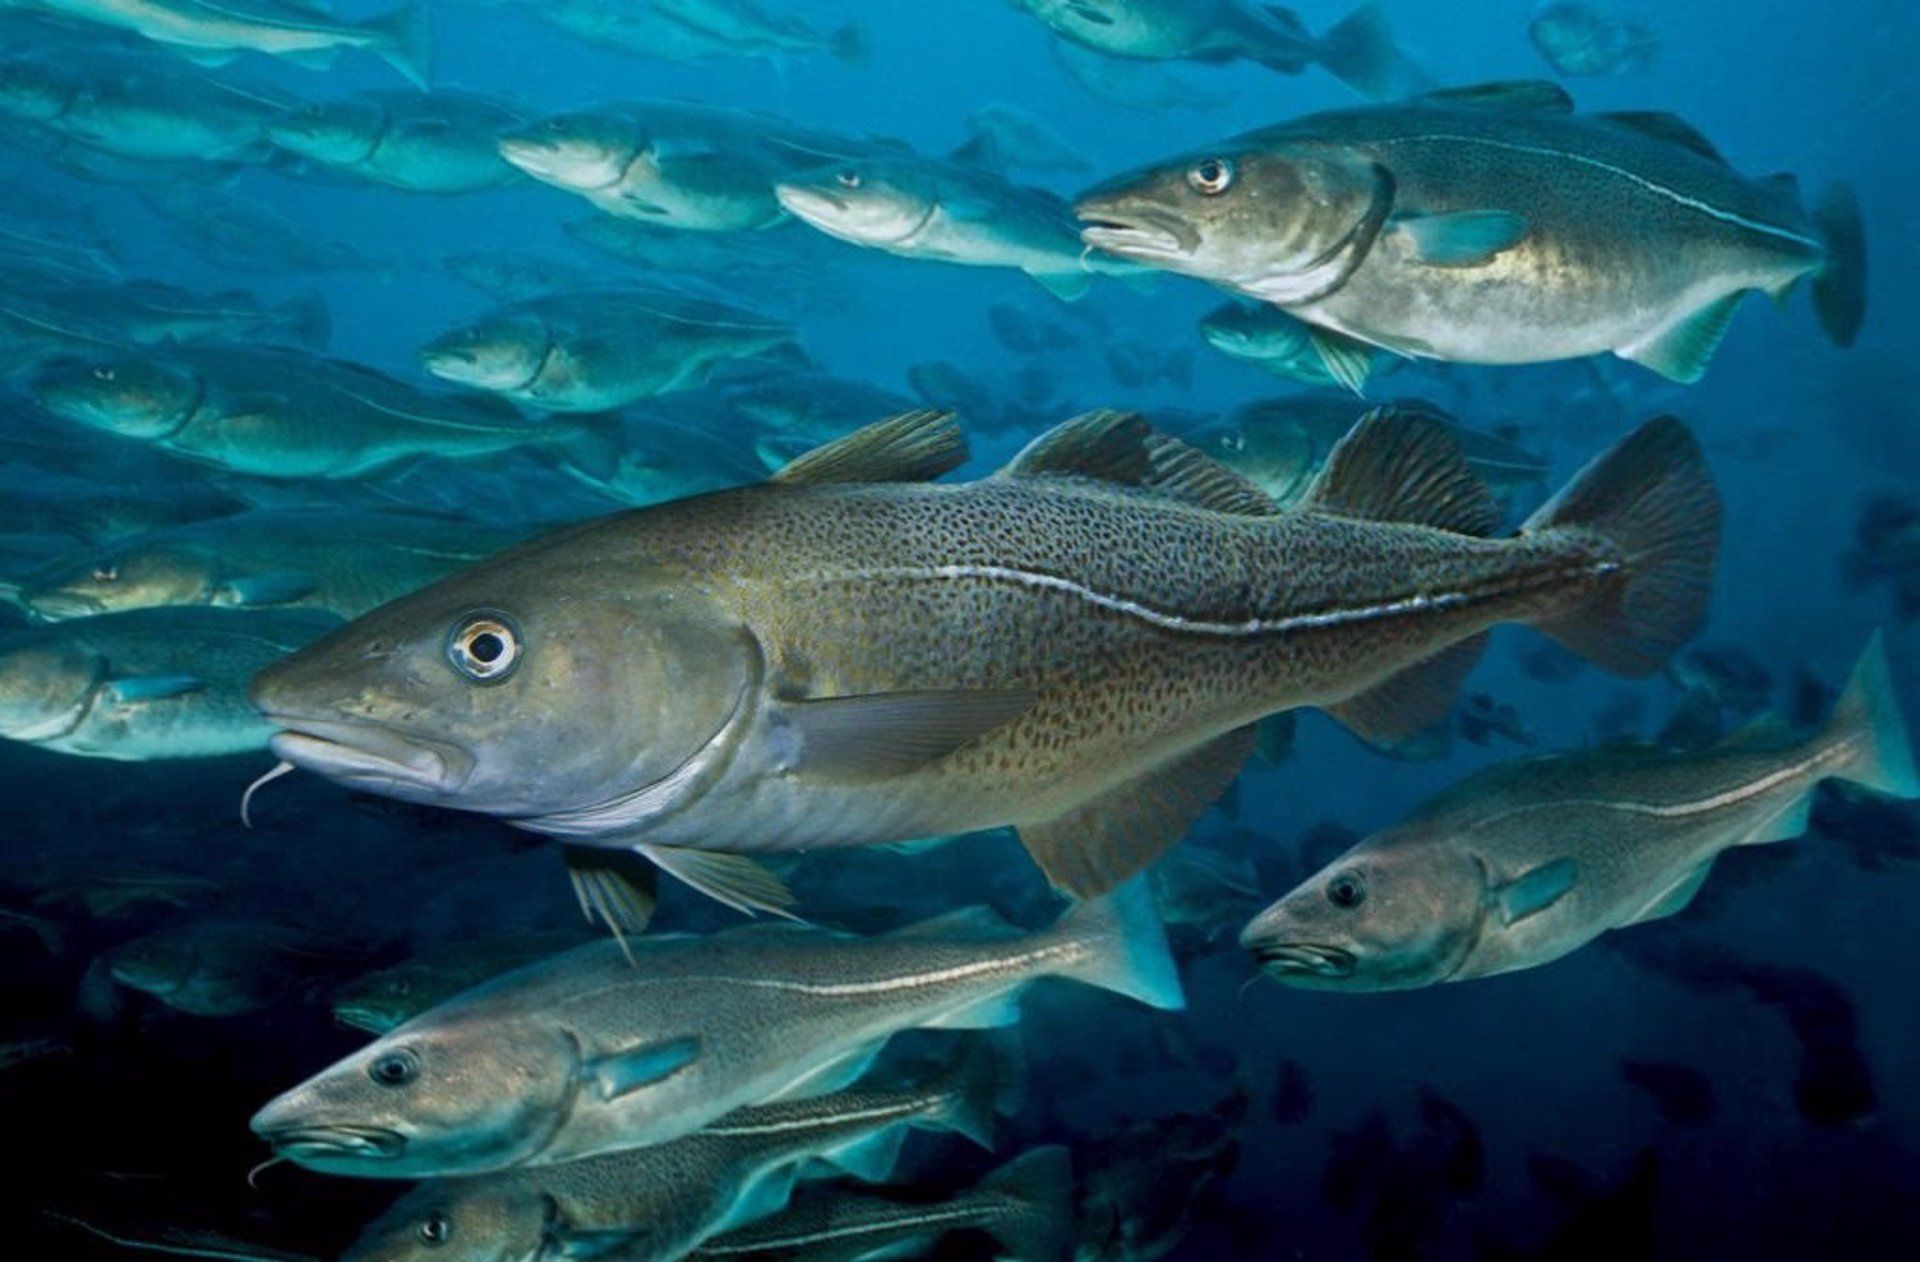 La organización Our Fish alerta sobre incumplir de la prohibición descartes / Foto: EP